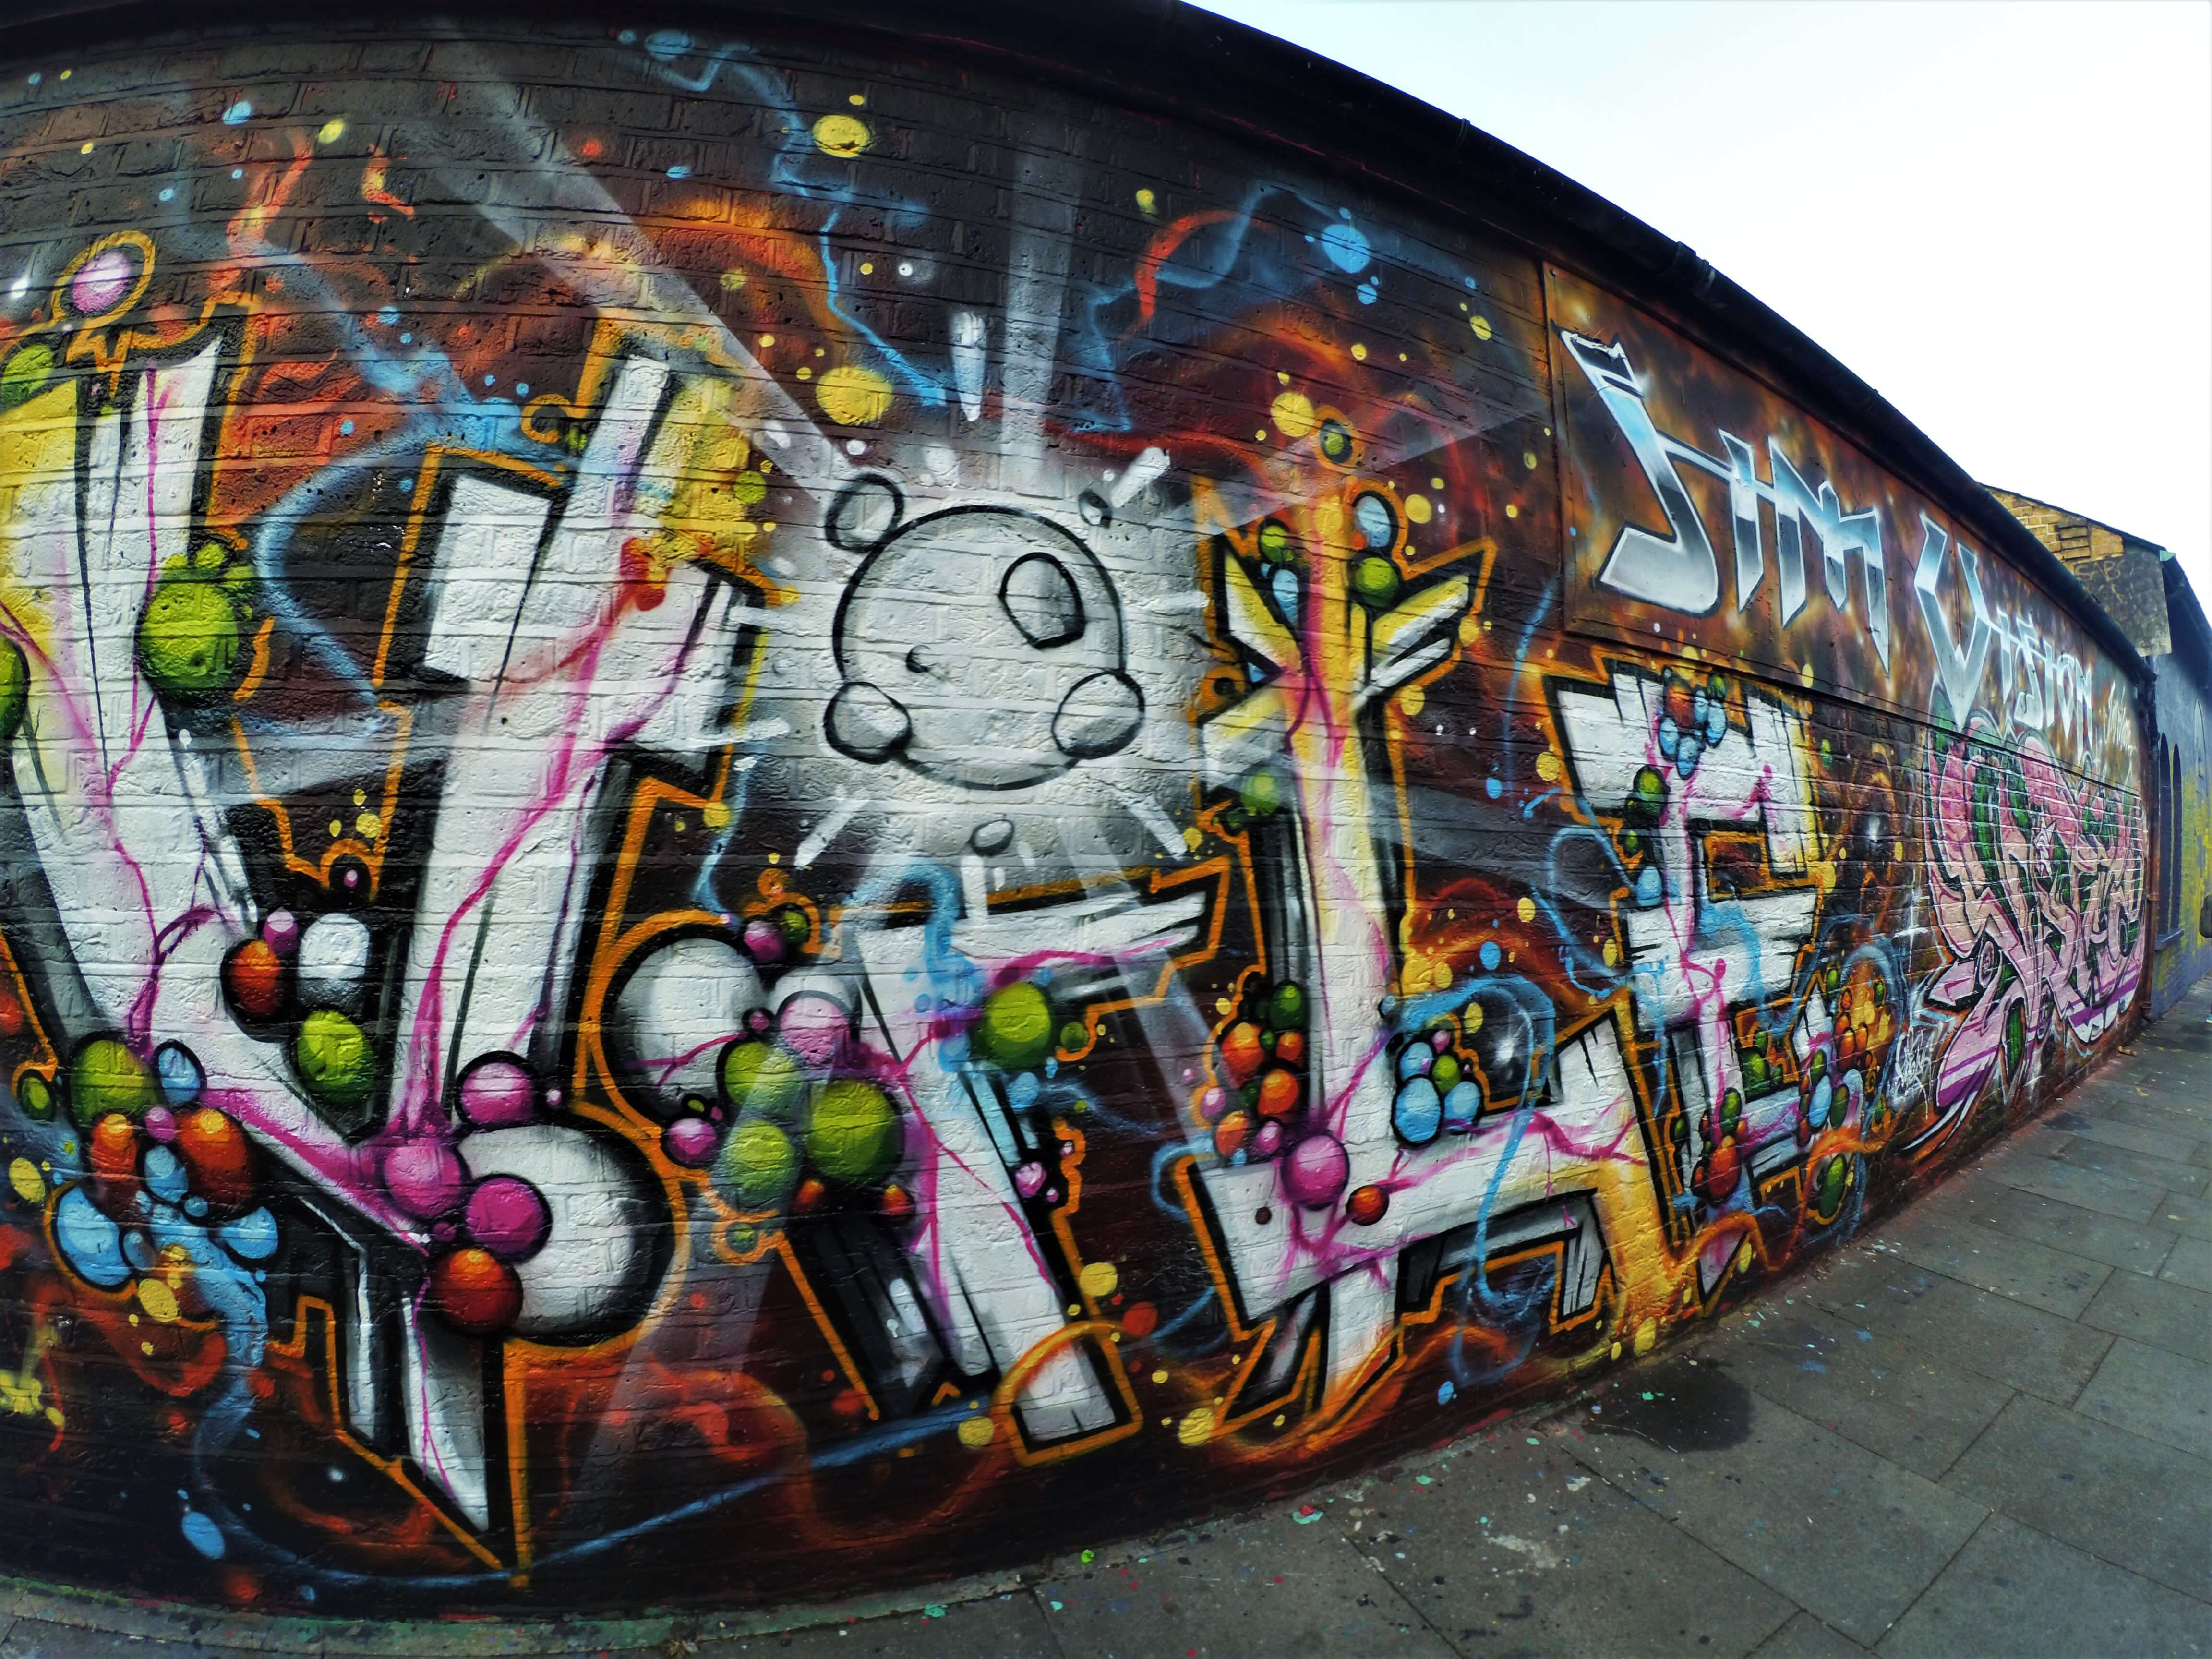 Street art in Shoreditch, London underground